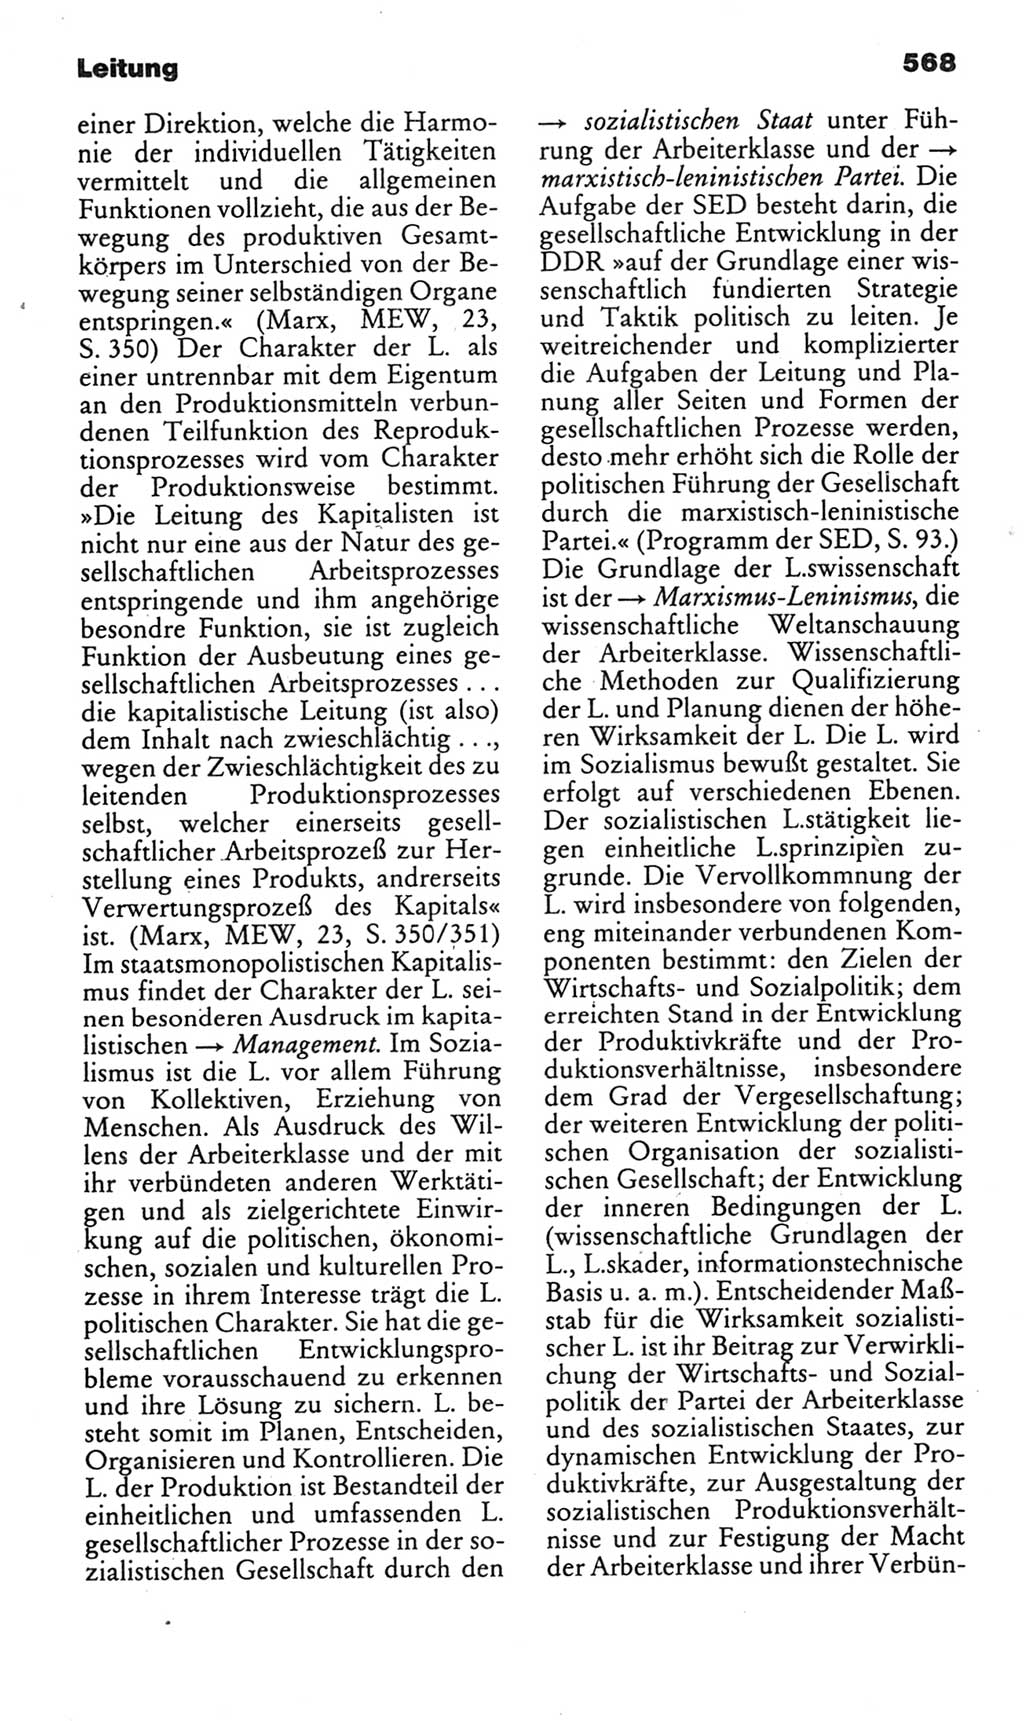 Kleines politisches Wörterbuch [Deutsche Demokratische Republik (DDR)] 1985, Seite 568 (Kl. pol. Wb. DDR 1985, S. 568)